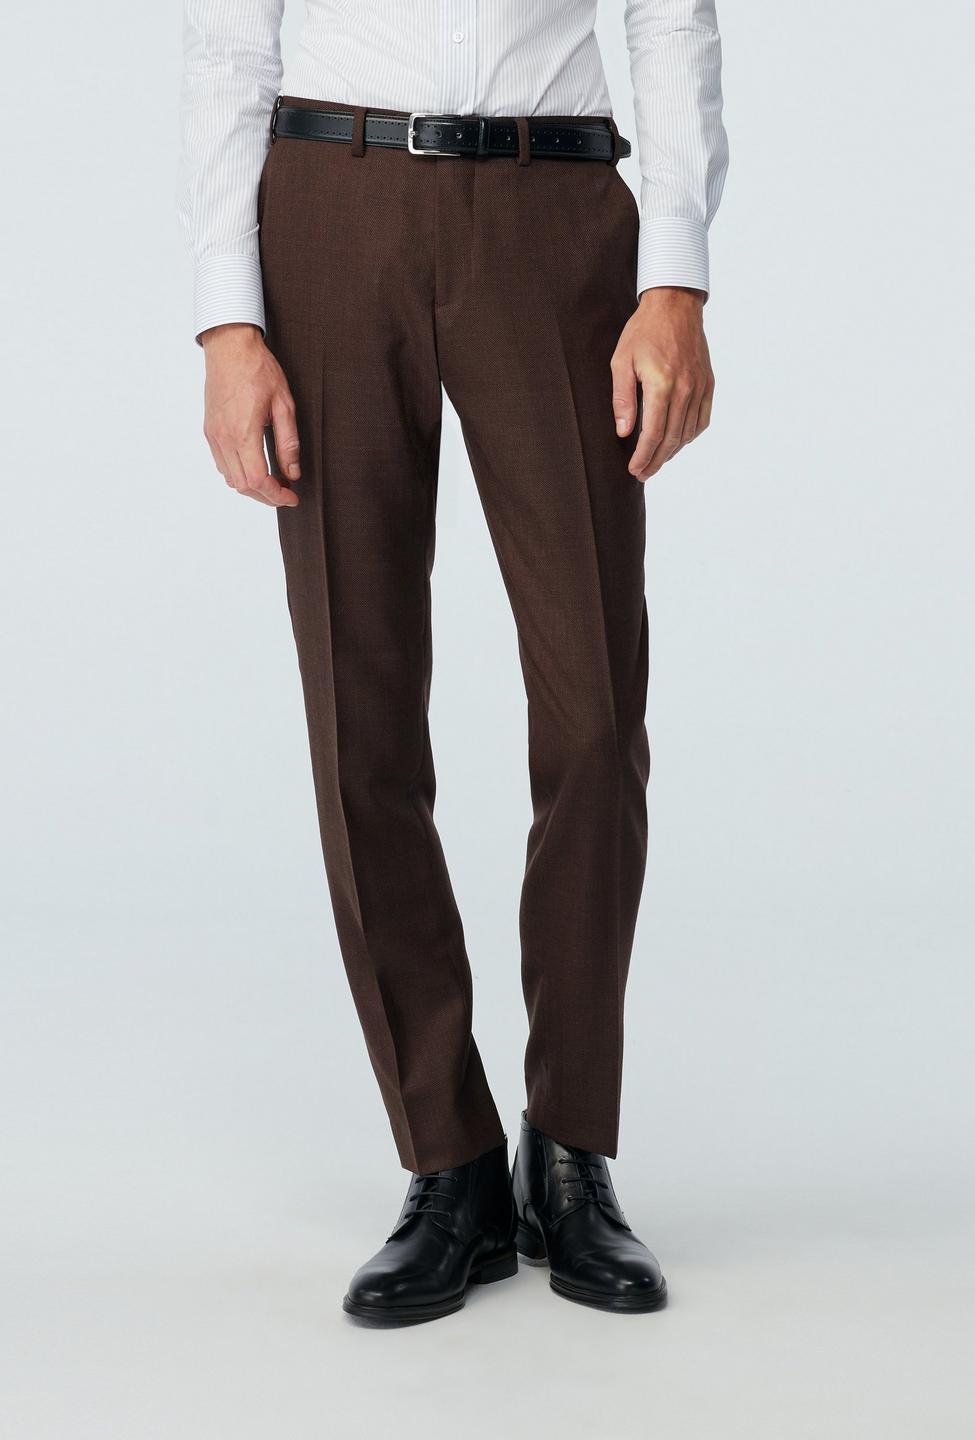 brown dress pants